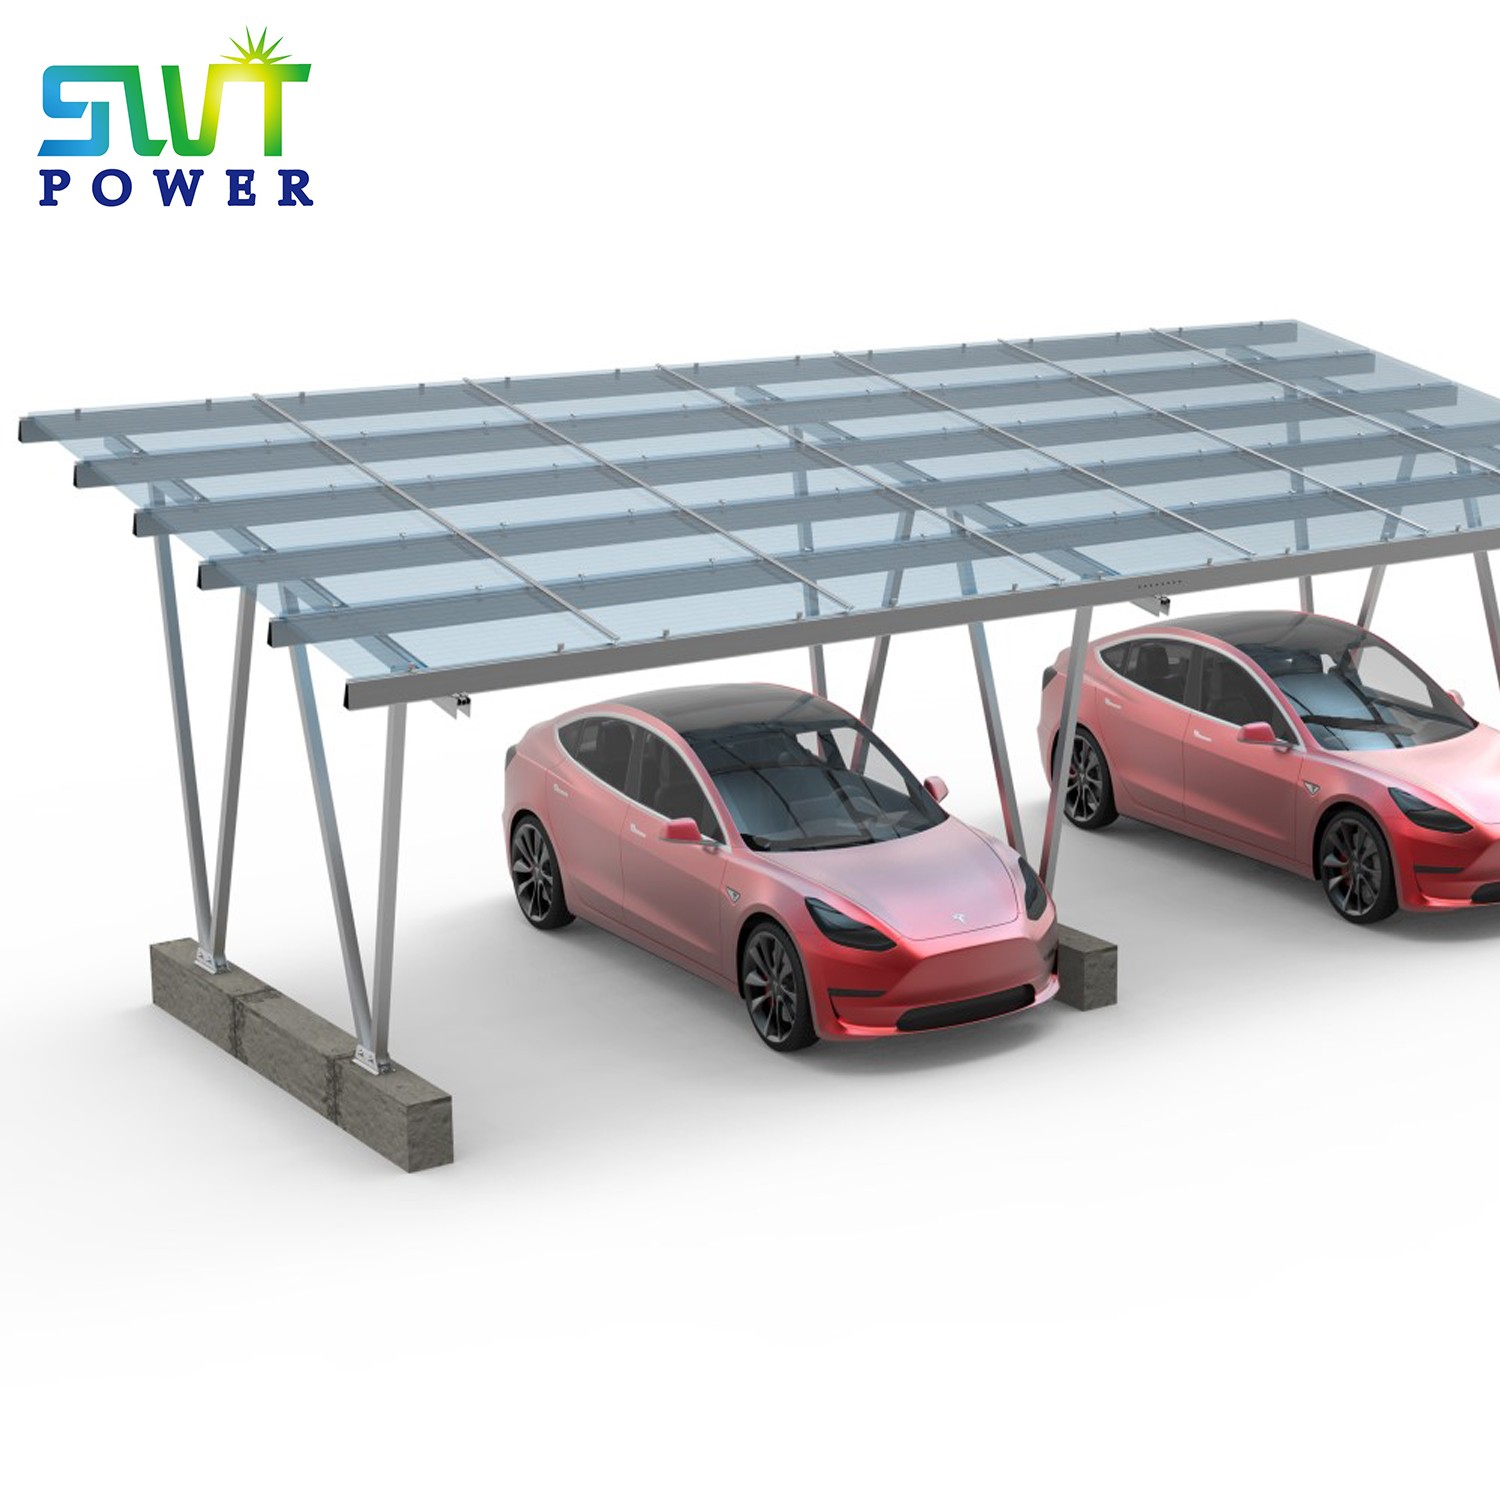 Hệ thống lắp đặt PV Hệ thống lắp đặt cổng vận chuyển bằng năng lượng mặt trời cho trạm sạc EV Sạc bằng năng lượng mặt trời PV
